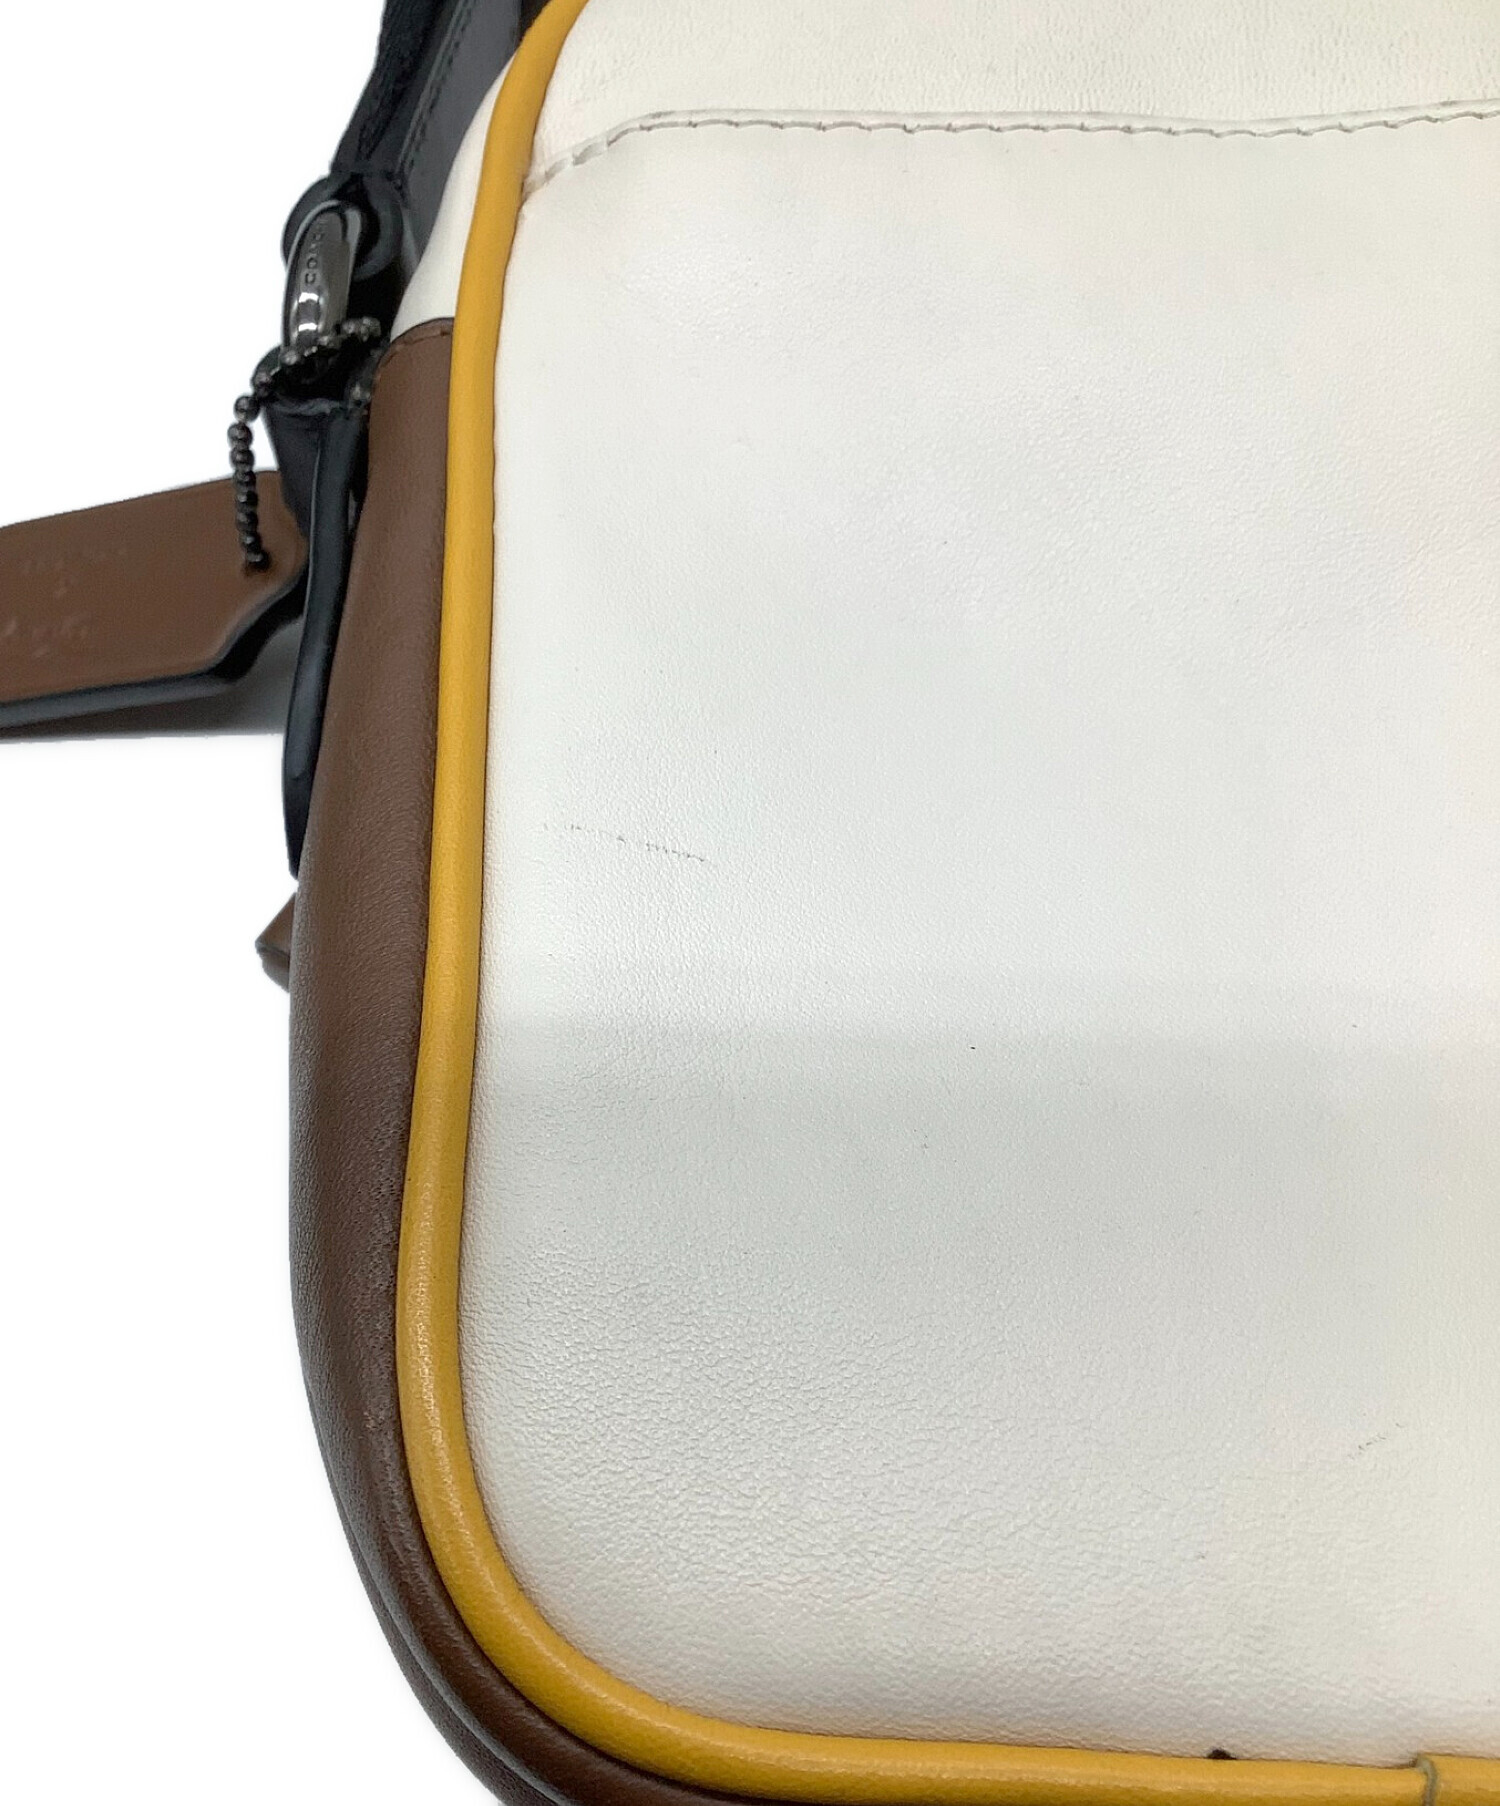 コーチ ショルダーバッグ 斜めがけ 3918 ベースボールペーサー ミッキーマウス ディズニー レザー 革 ライトベージュ ブラウン イエロー系 カジュアル 普段使い レディース 女性 COACH shoulder Bag leather Disney